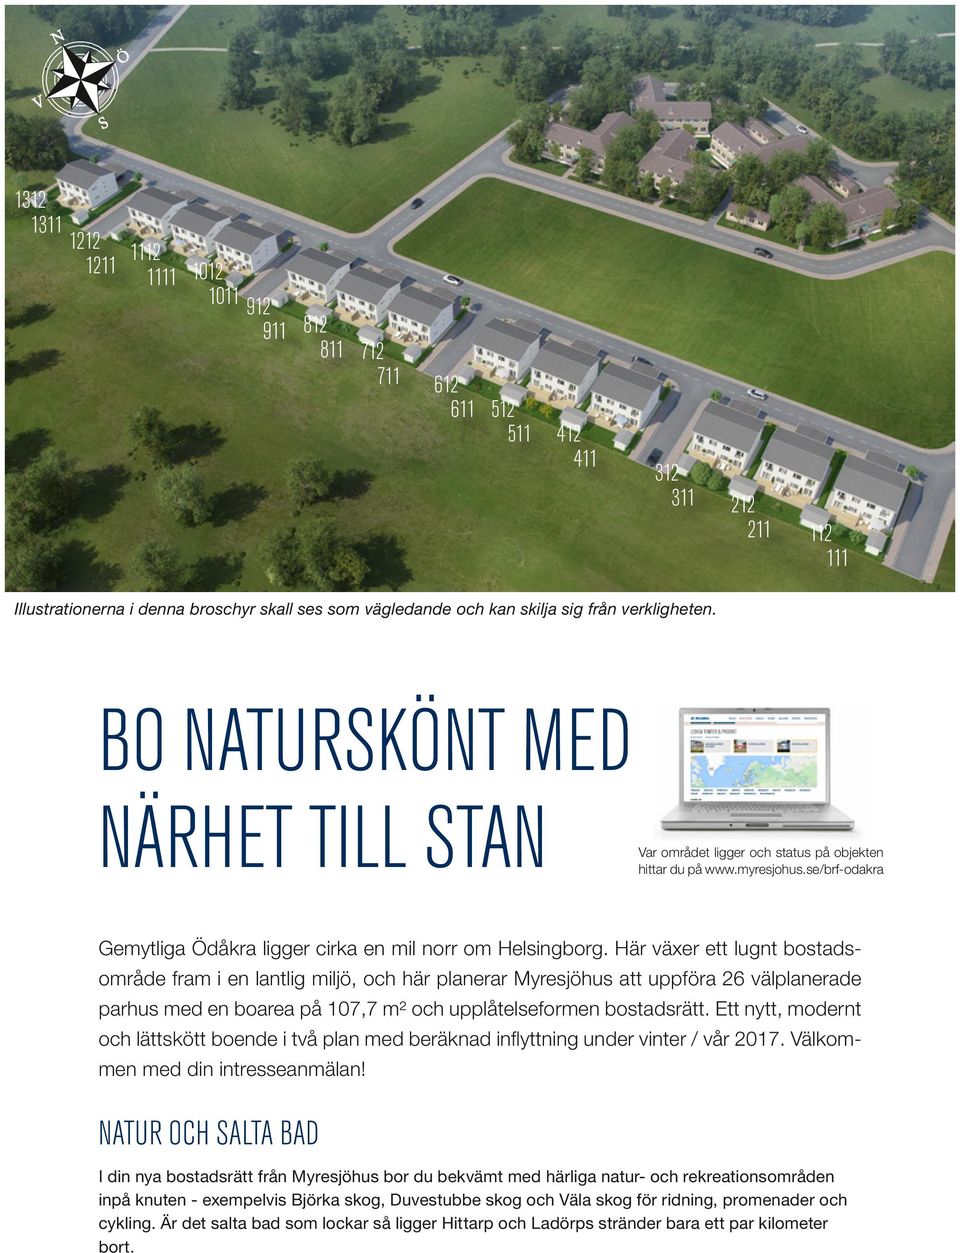 Här växer ett lugnt bostadsområde fram i en lantlig miljö, och här planerar Myresjöhus att uppföra 26 välplanerade parhus med en boarea på 107,7 m² och upplåtelseformen bostadsrätt.